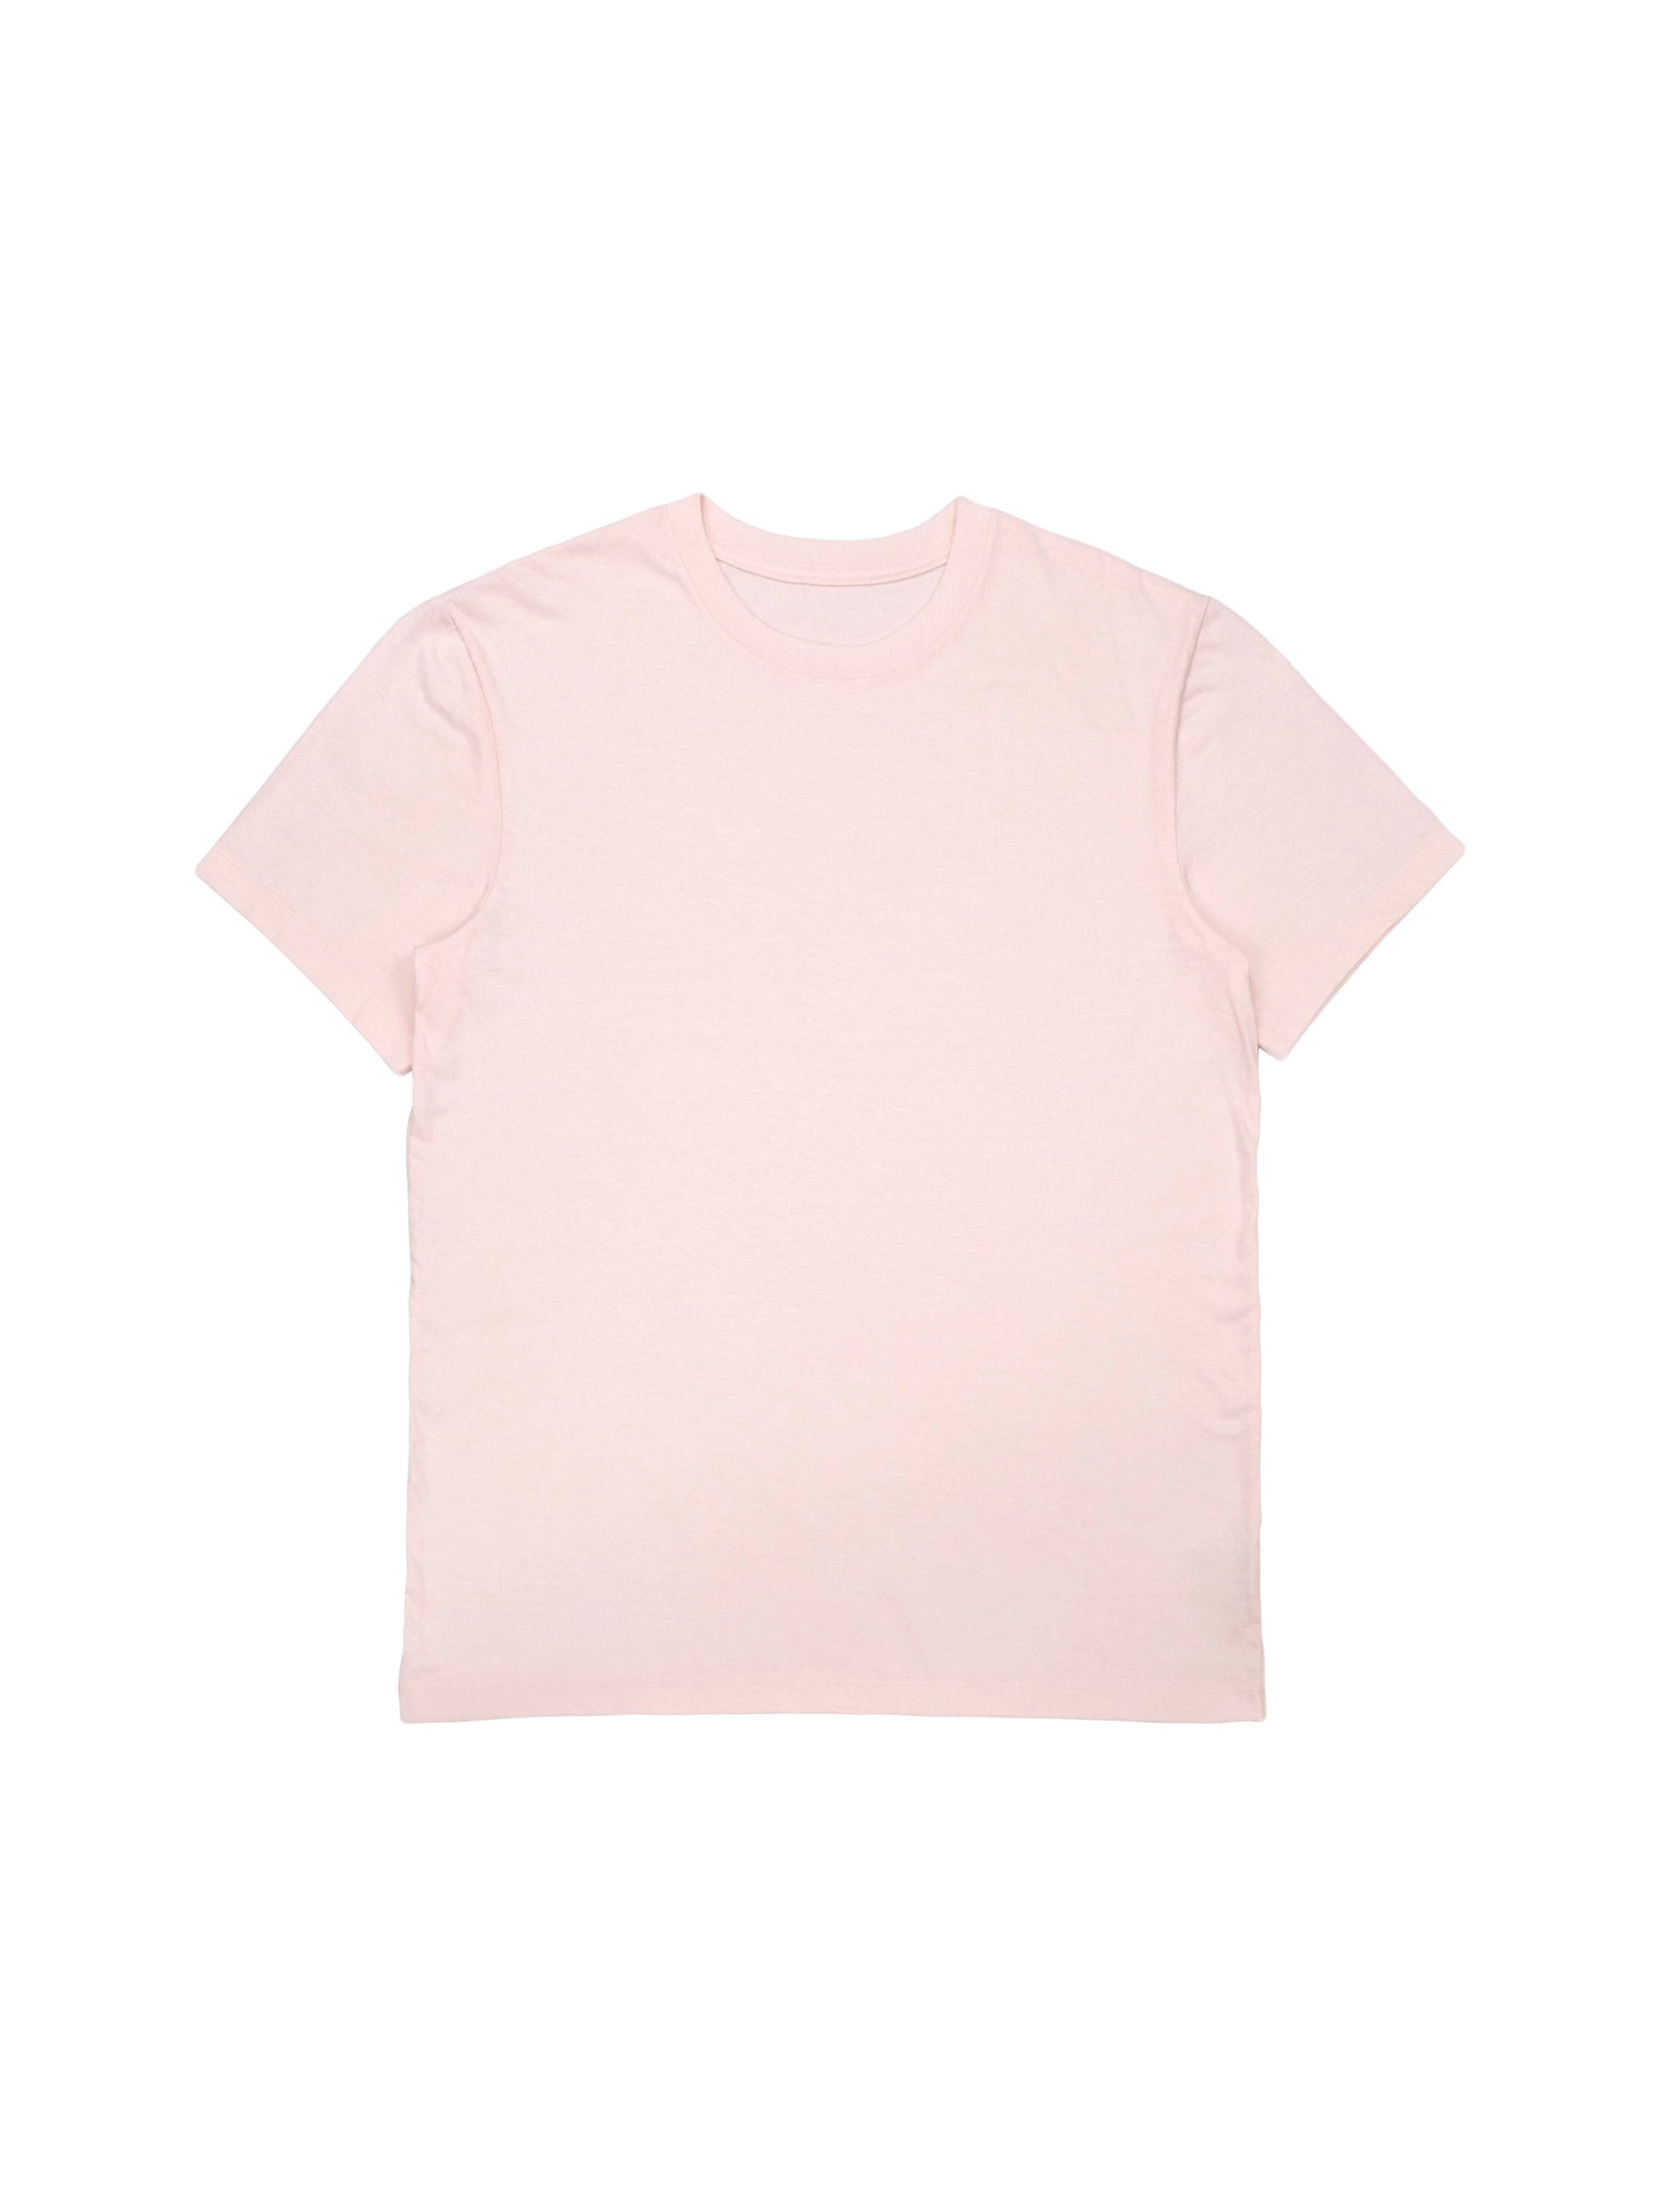 BOXY T-SHIRT Blank - Pale Pink Cotton